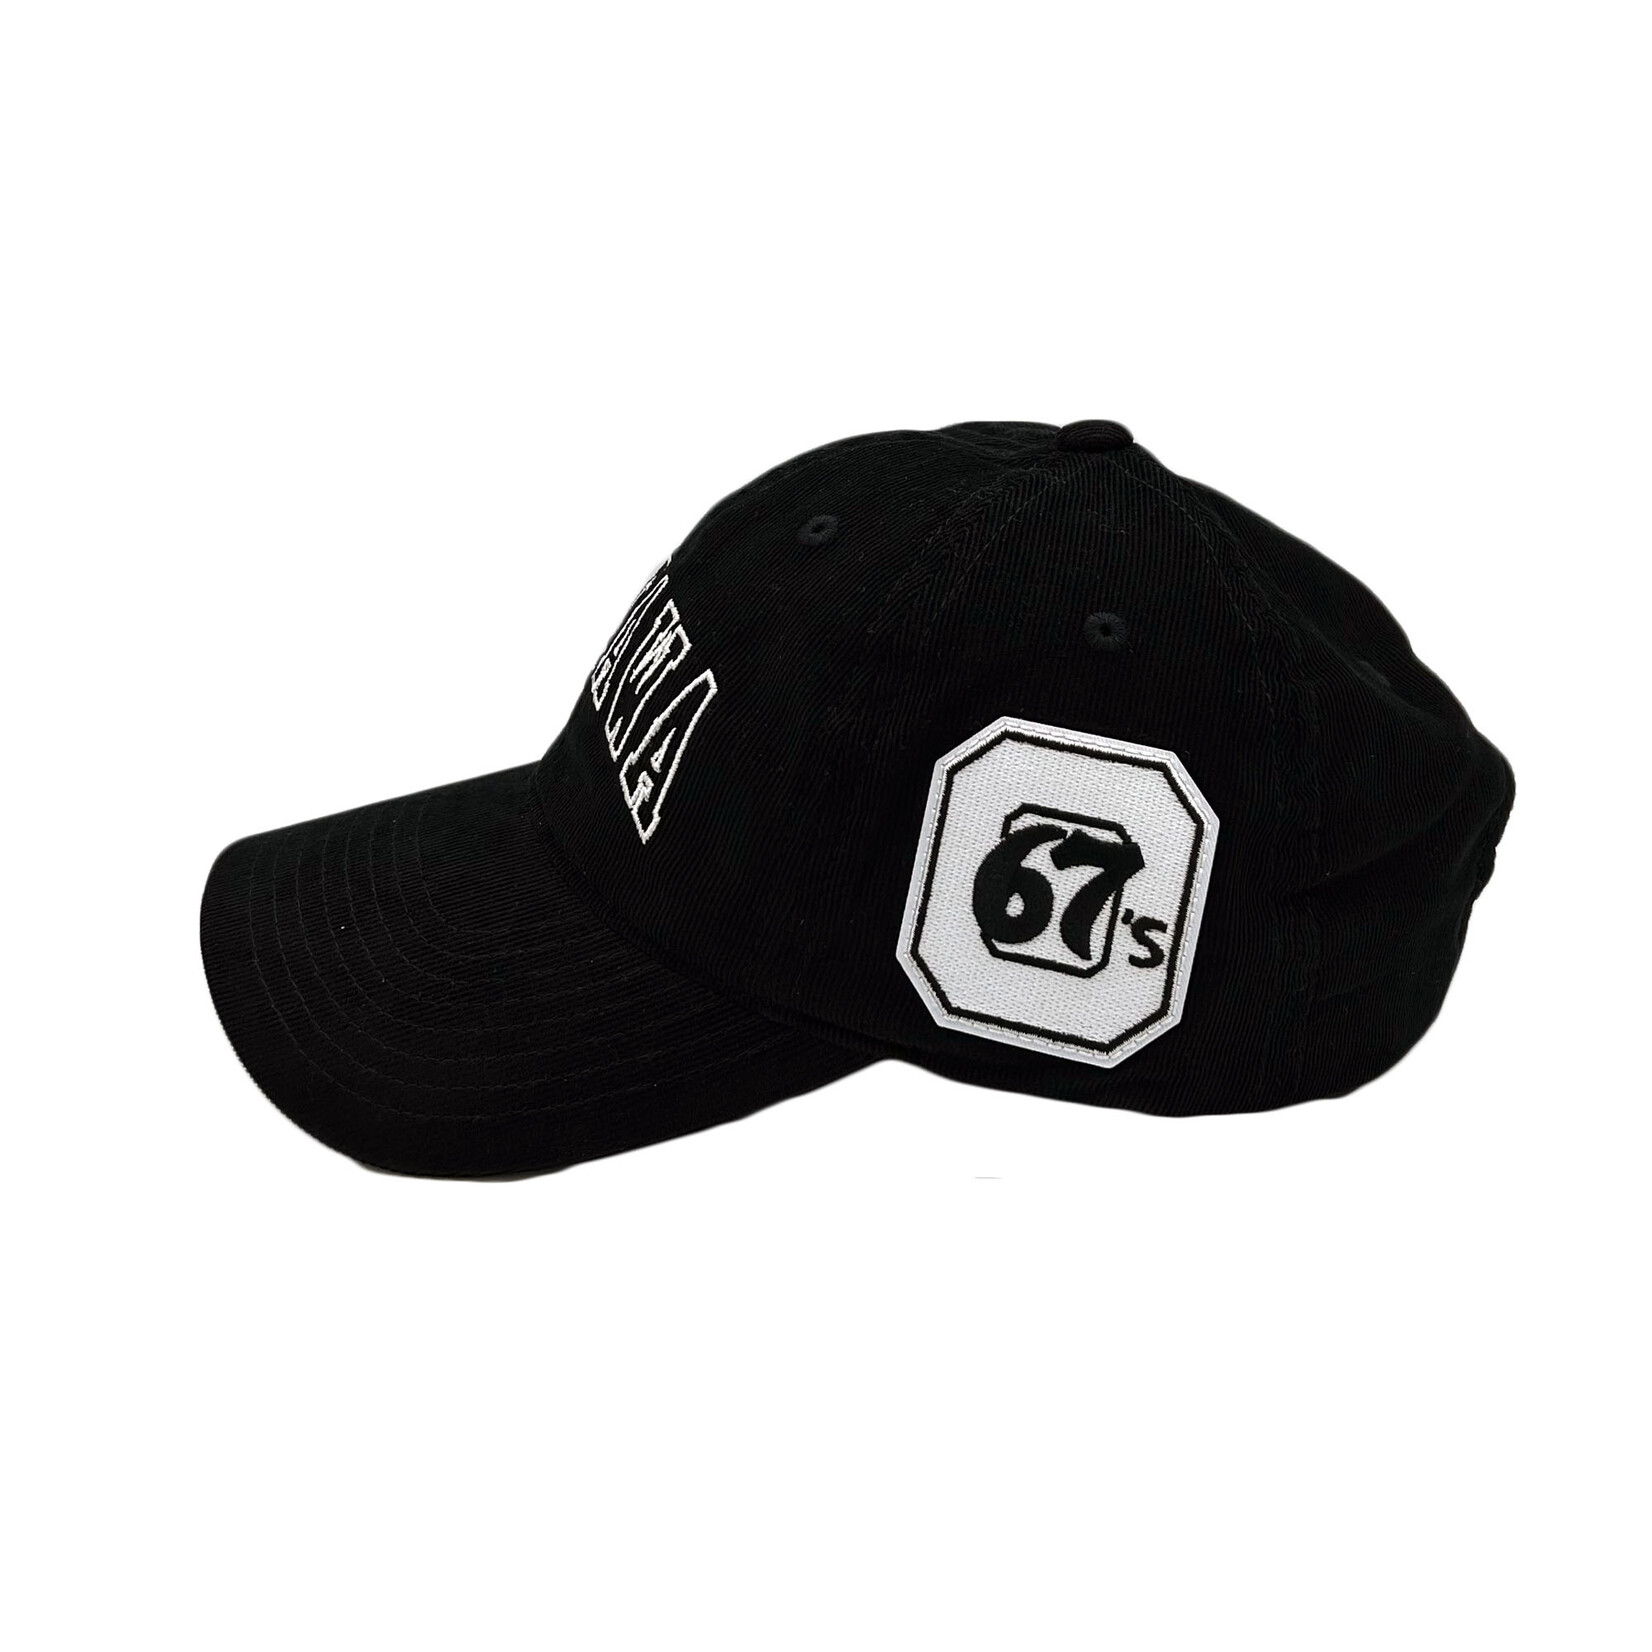 OTTAWA 67's 67's City Hat